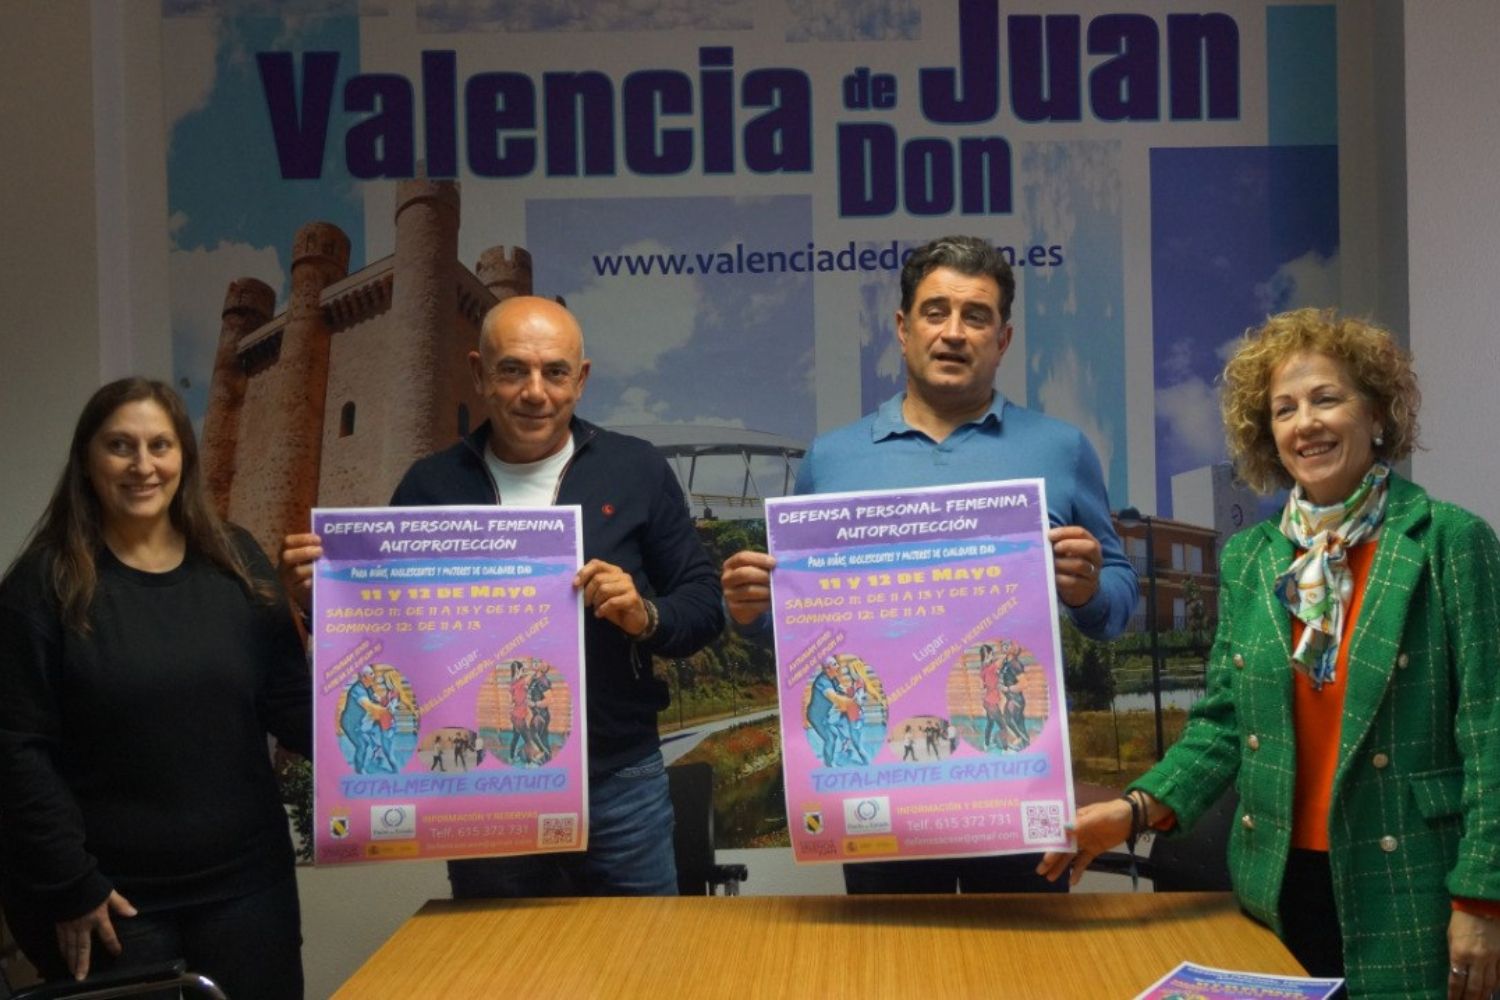  Valencia de Don Juan ofrece un taller de defensa personal femenina 